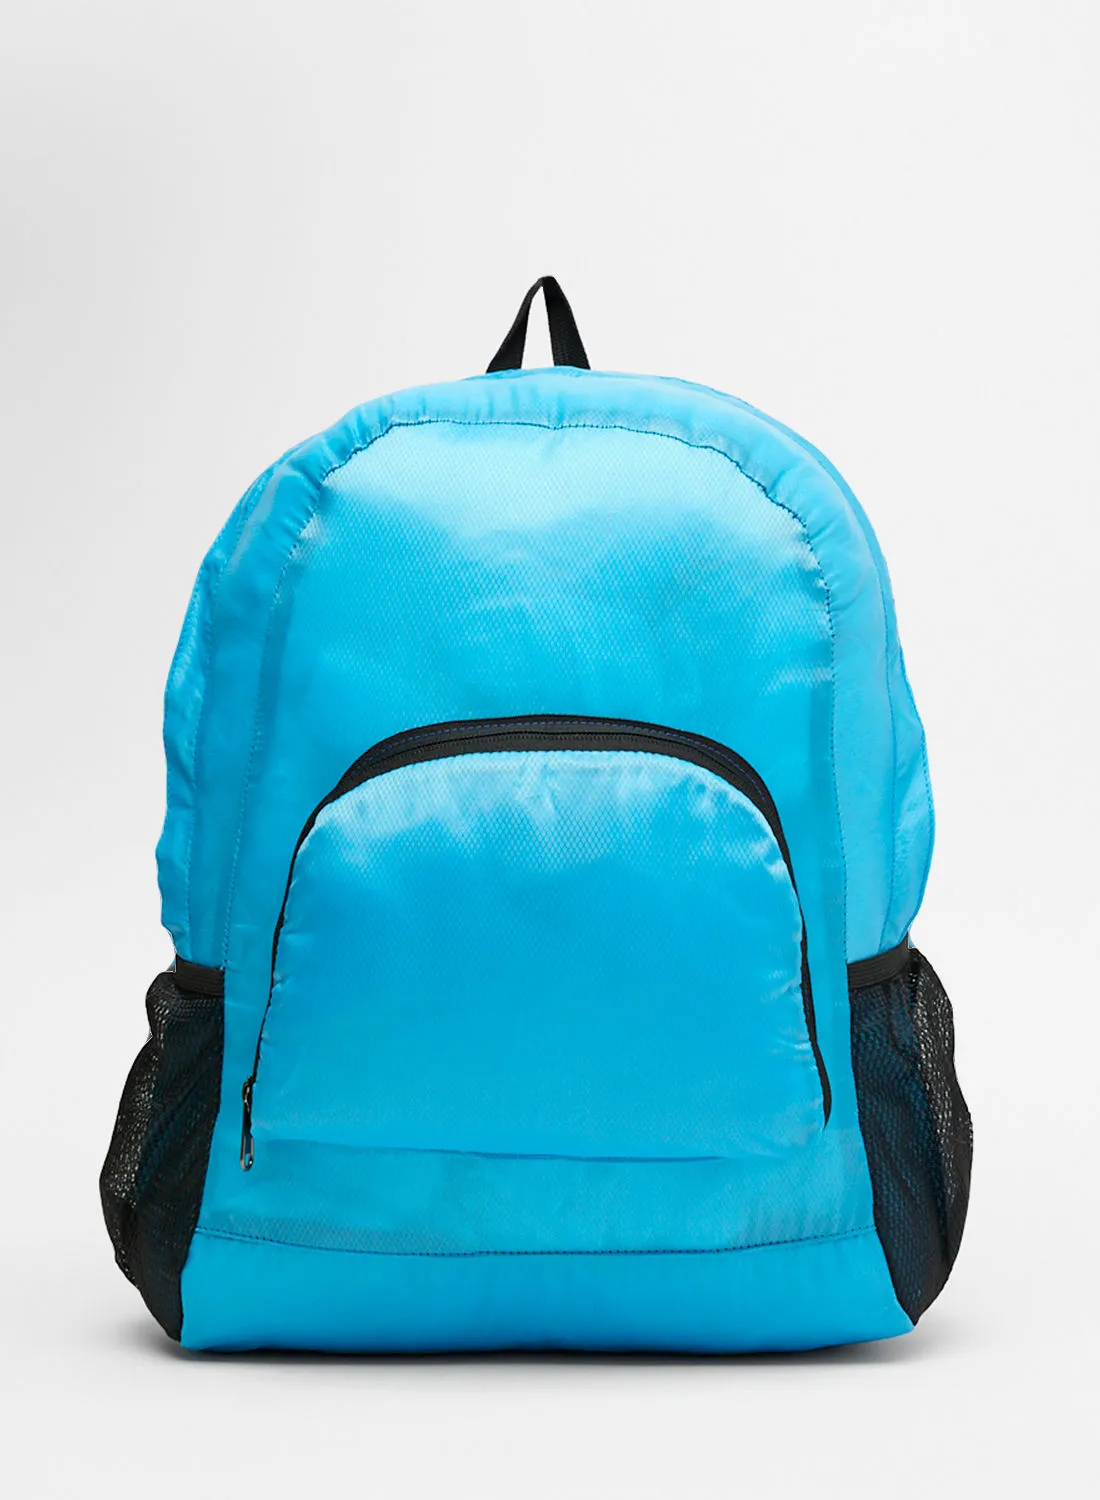 Amal Smart Backpack Sky Blue